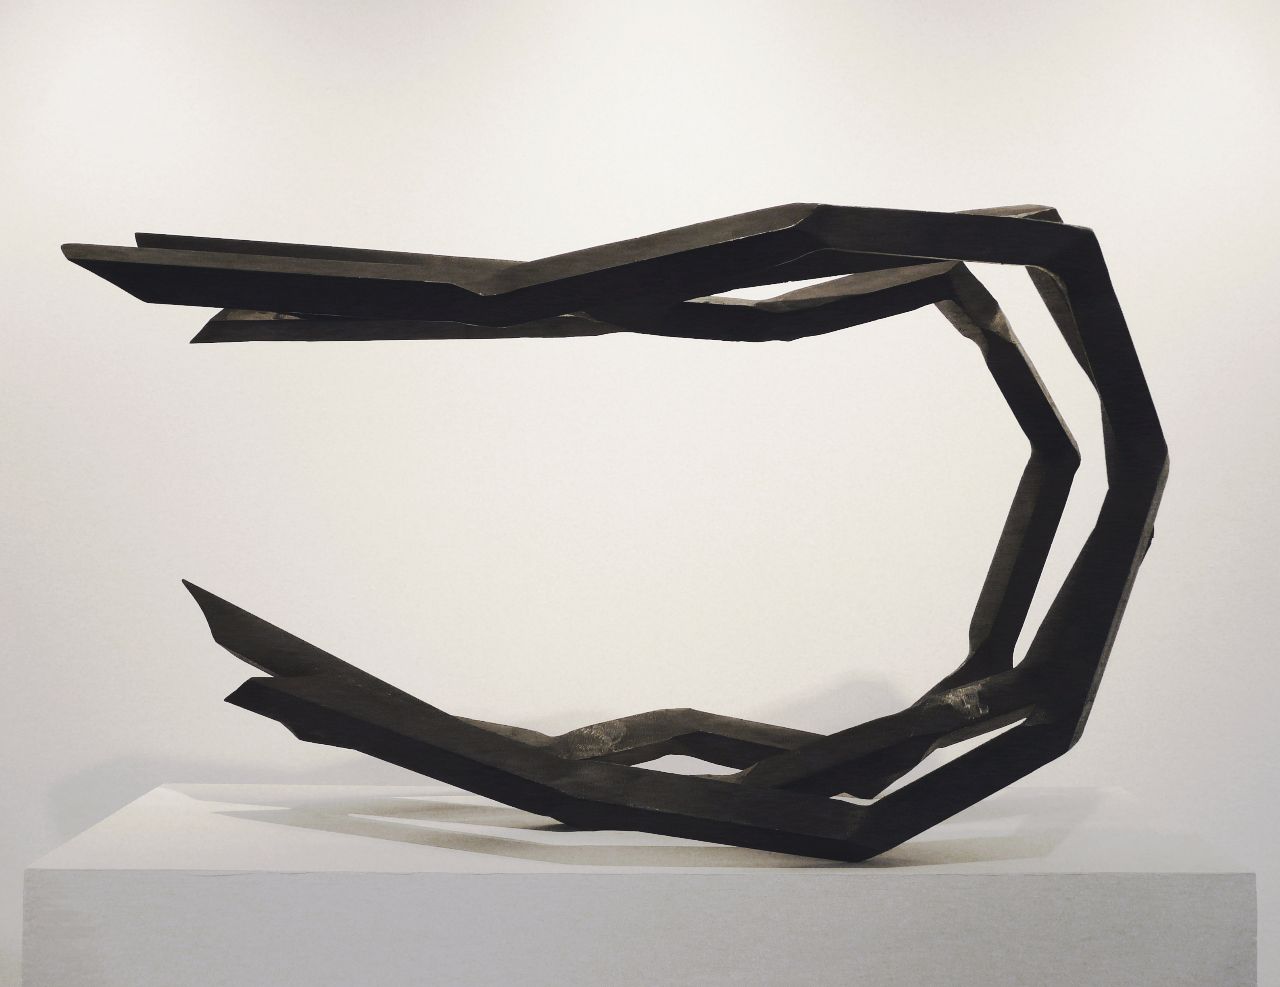 Robert Schad, FALUR, 2010, Vierkantstahl massiv, 45 mm, 70 cm x 120 cm x 38 cm, Preis auf Anfrage